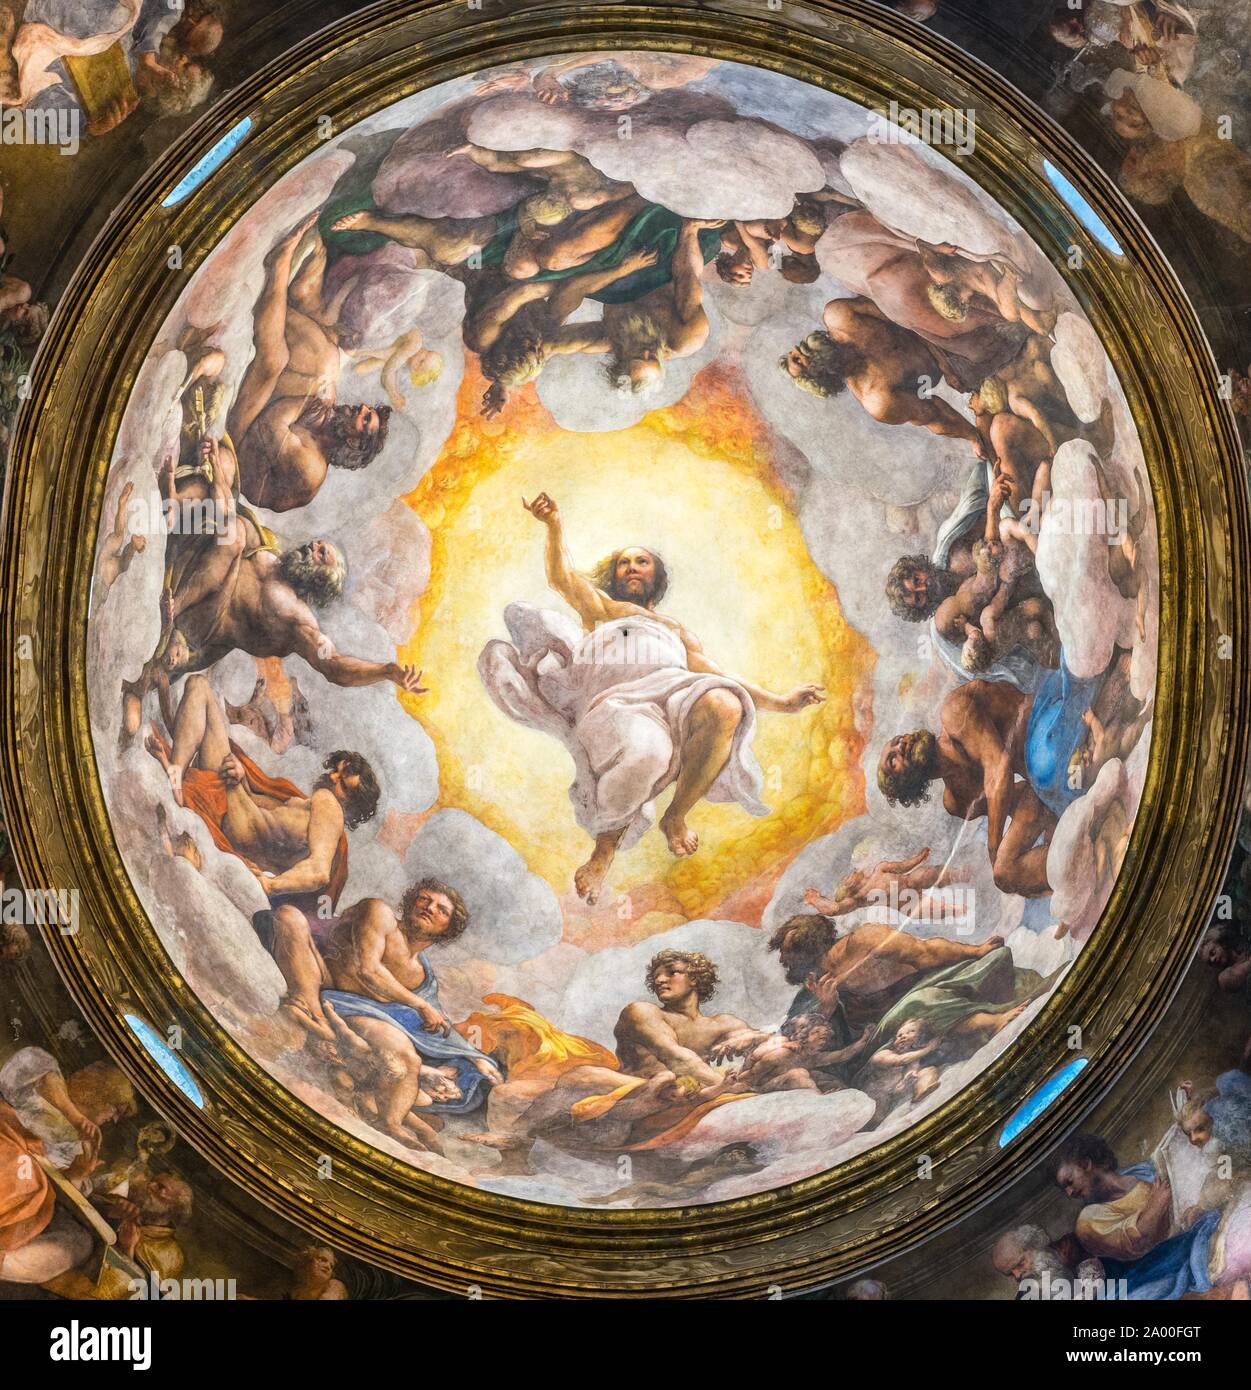 Ceiling fresco, vision of St. John in Patmos, monastery San Giovanni Evangelista, Parma, Emilia-Romagna, Italy Stock Photo